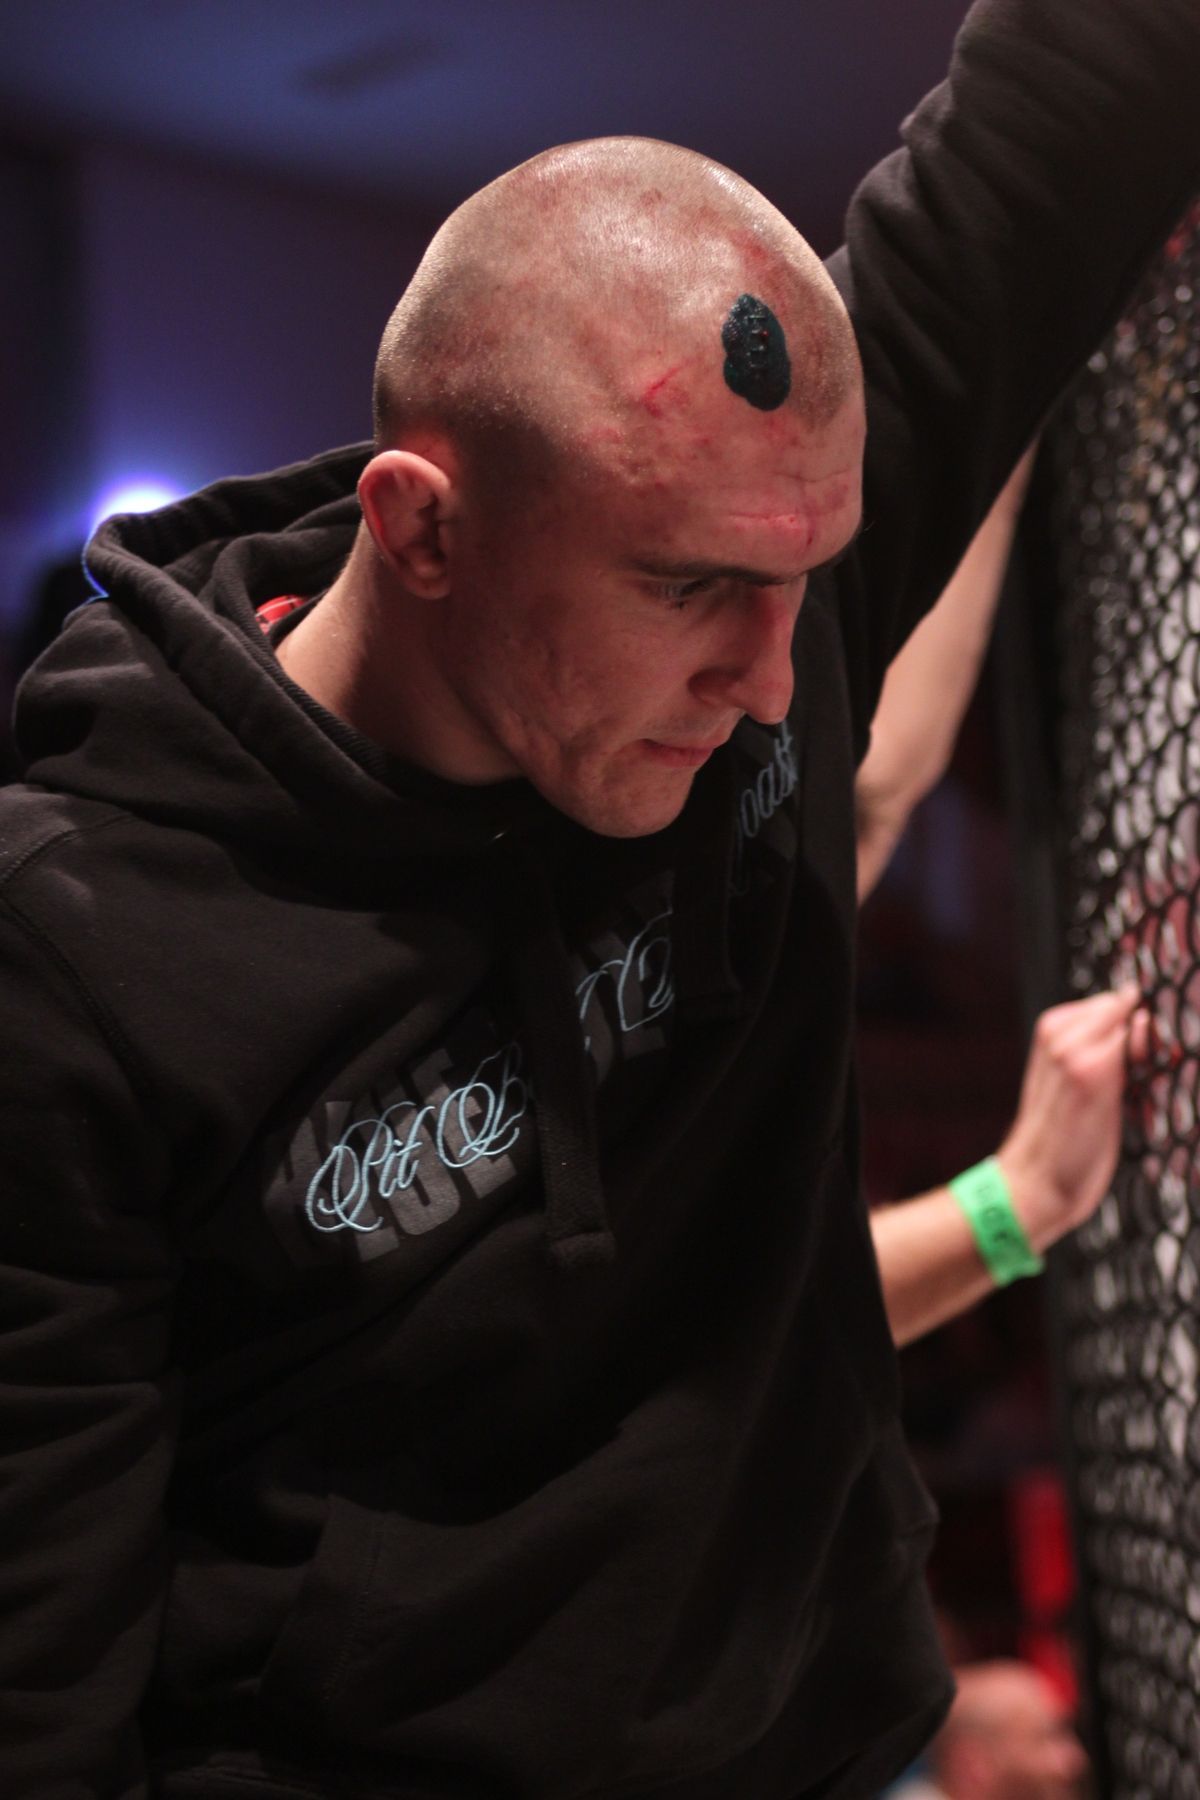 GCF 27: Road to the Cage - galavečer ultimátních soubojů MMA